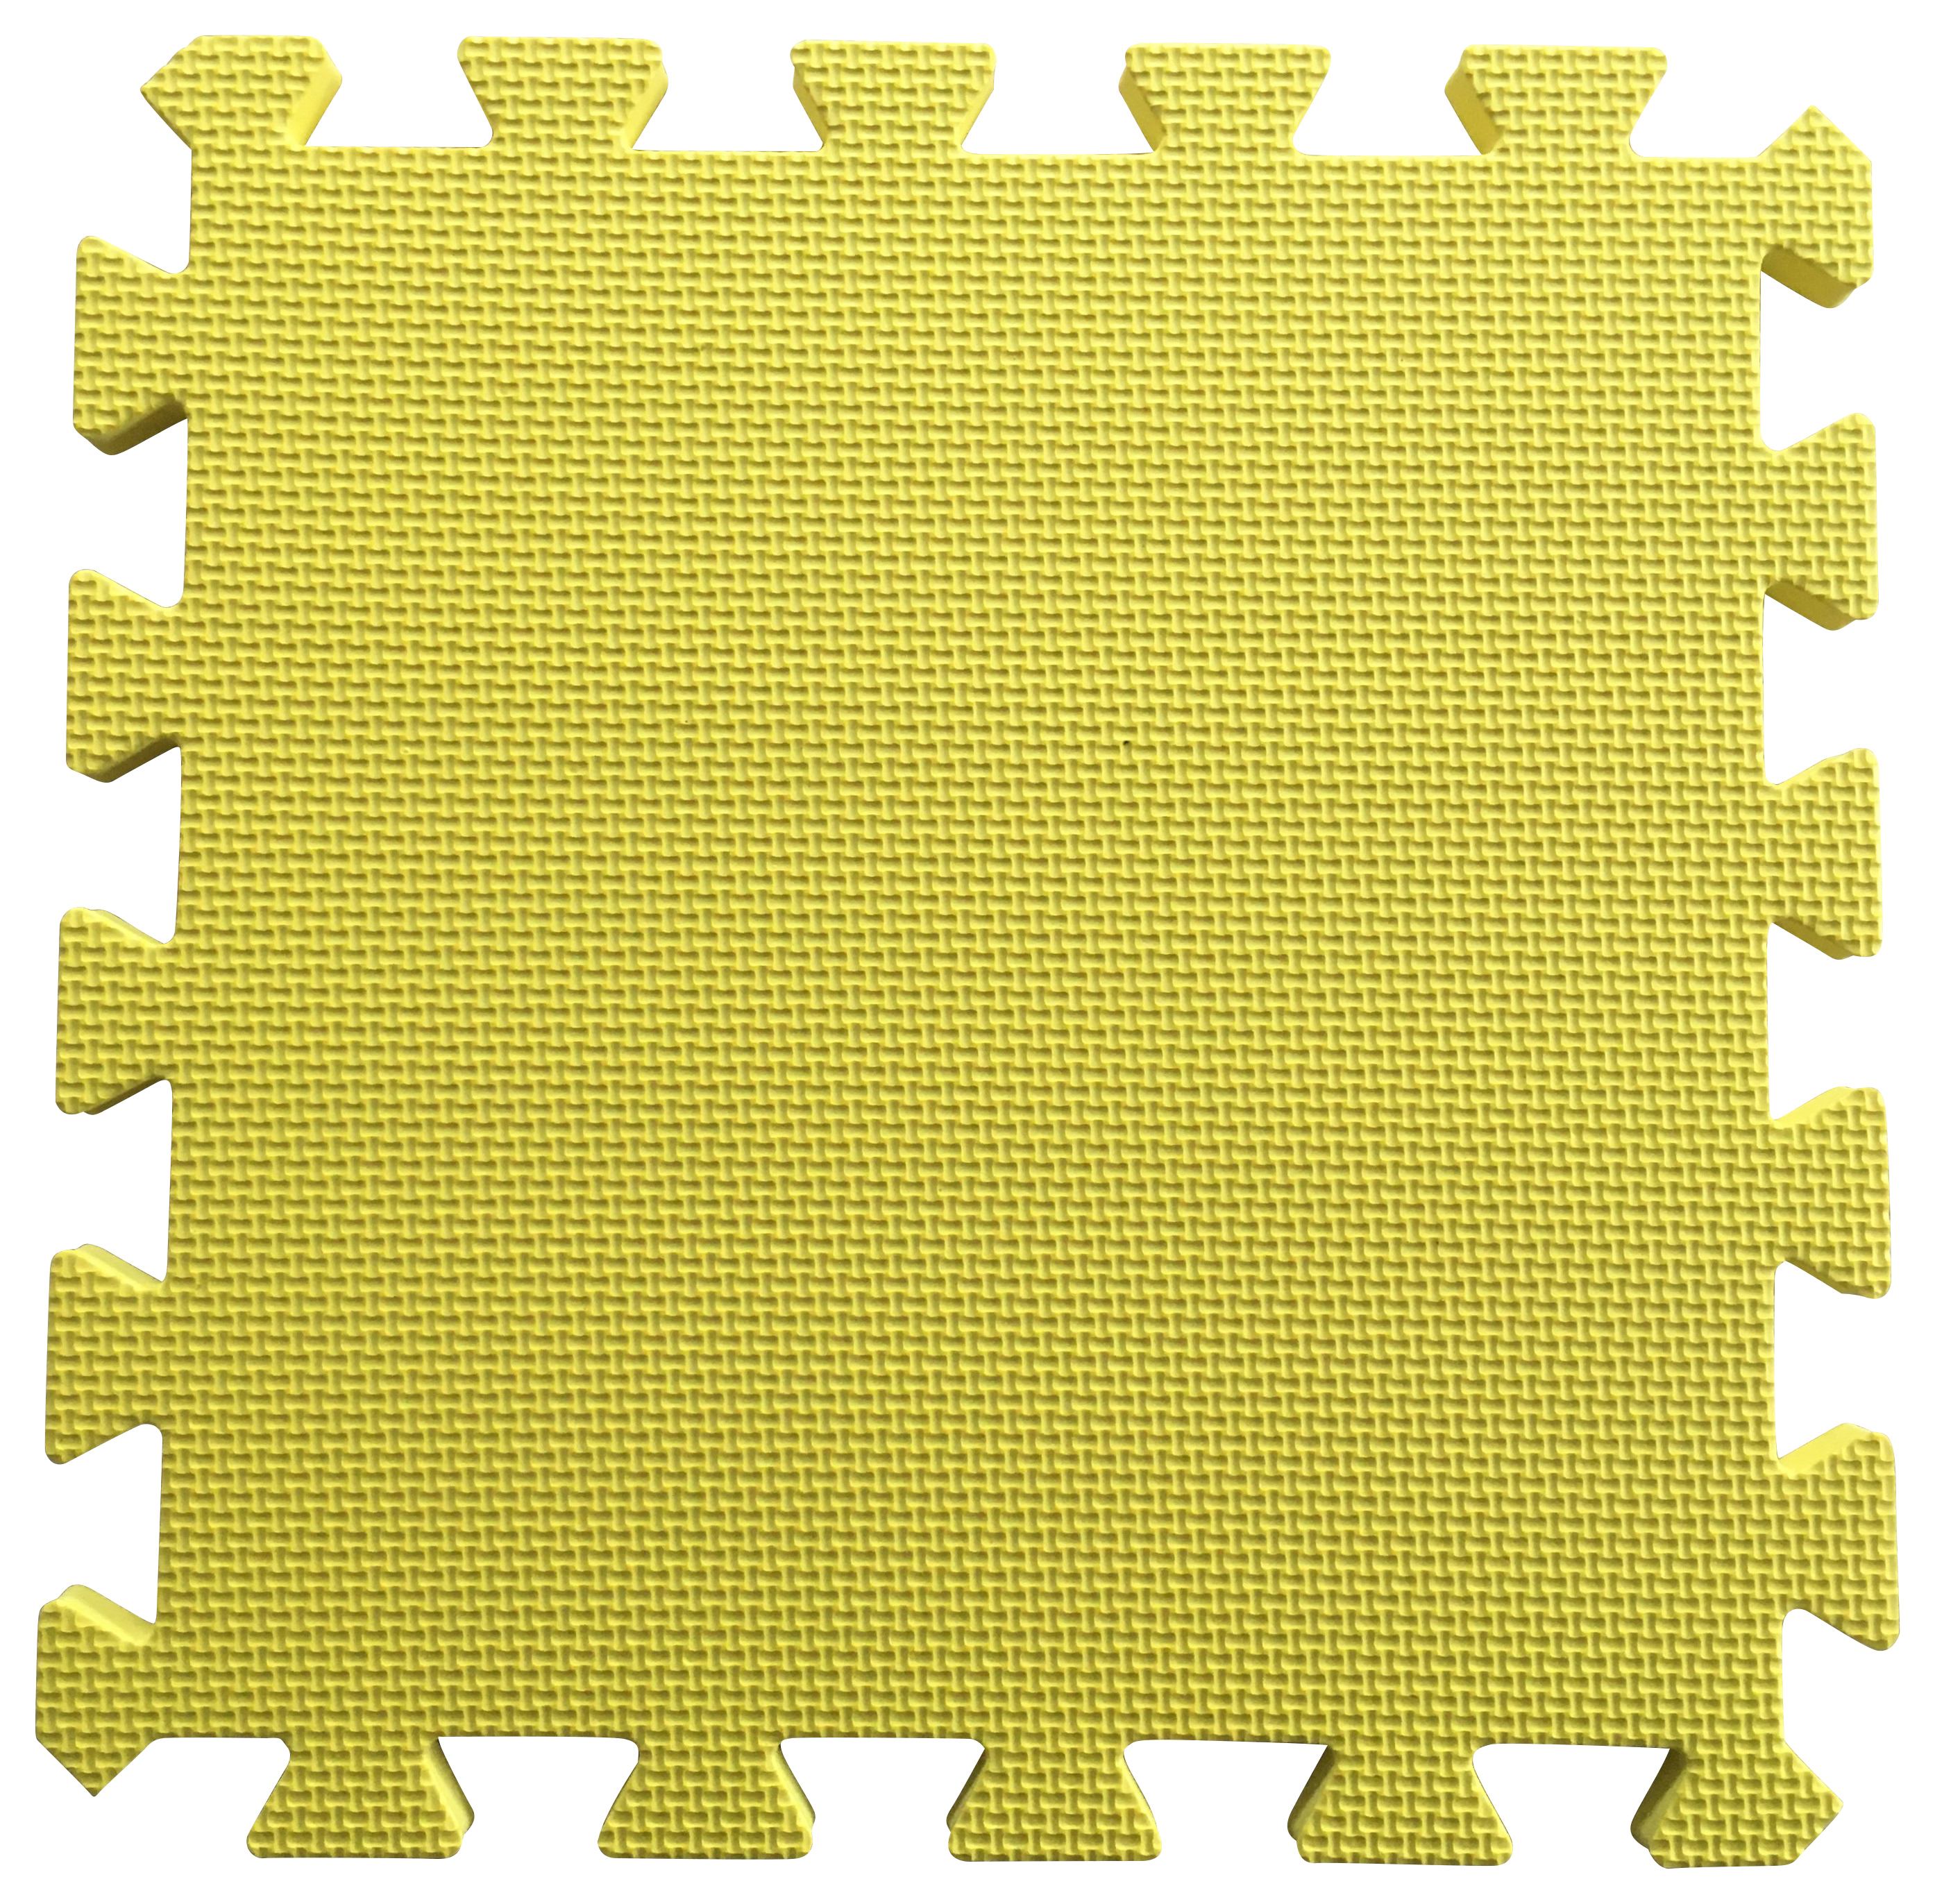 Warm Floor Yellow Interlocking Floor Tiles for Garden Buildings - 3 x 5ft